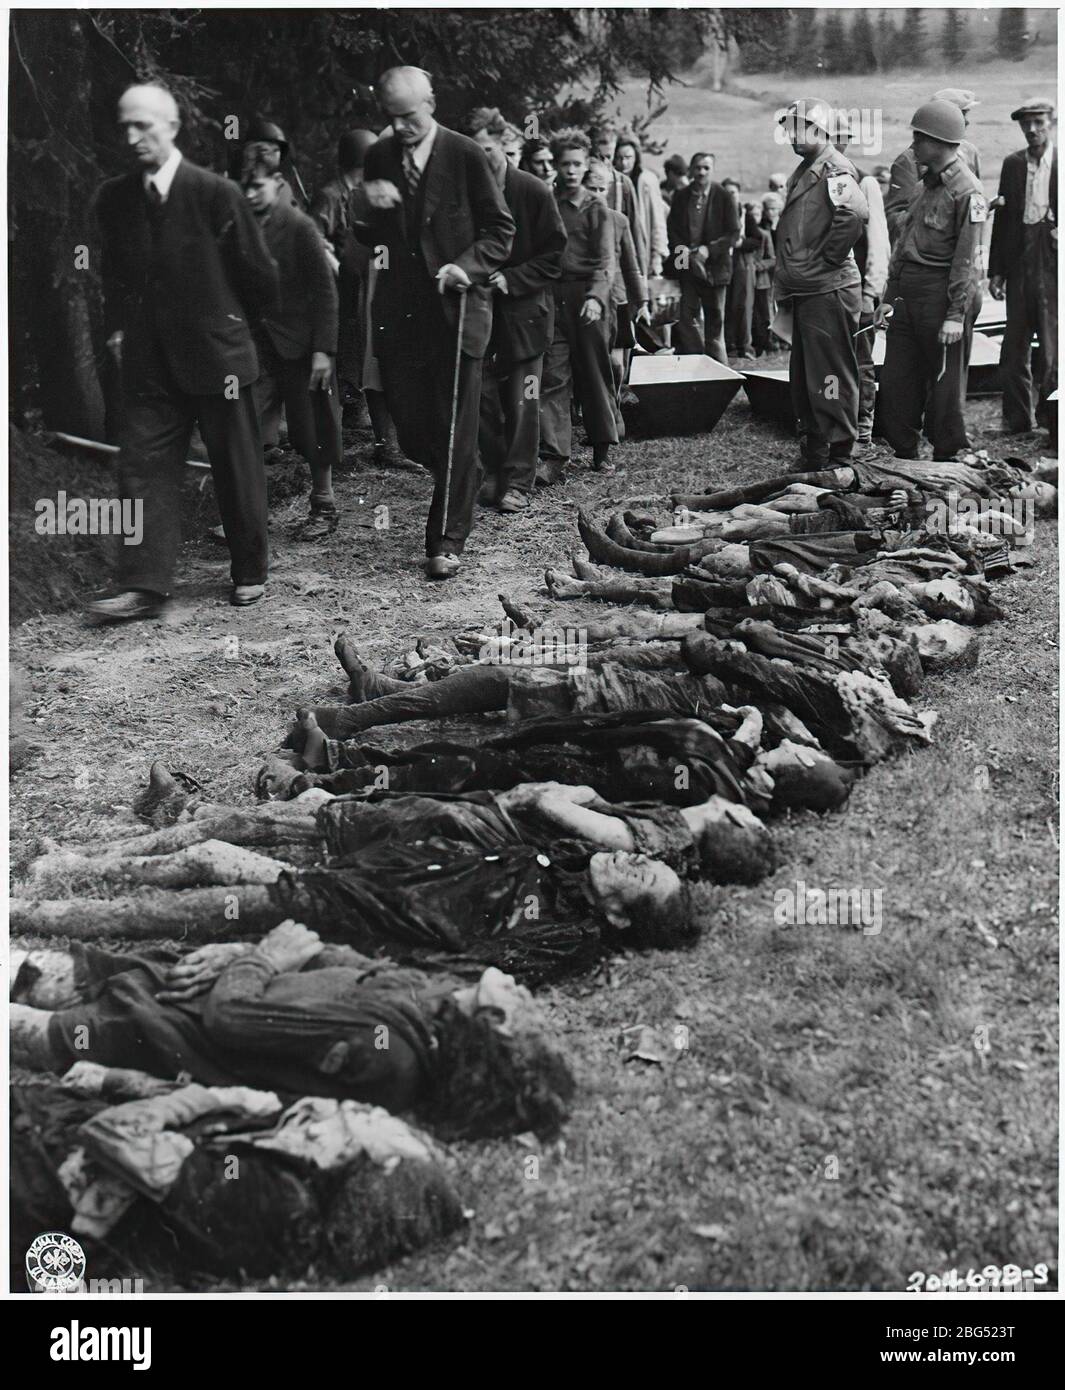 Dokumentation zum Zweiten Weltkrieg. Deutsche Zivilisten werden unter der Leitung von US-amerikanischen medizinischen Offizieren an einer Gruppe von 30 jüdischen Frauen vorbeigehen lassen, die von SS-Truppen verhungert wurden, um in der Tschechoslowakei 1945 Zeugen zu sein. Stockfoto